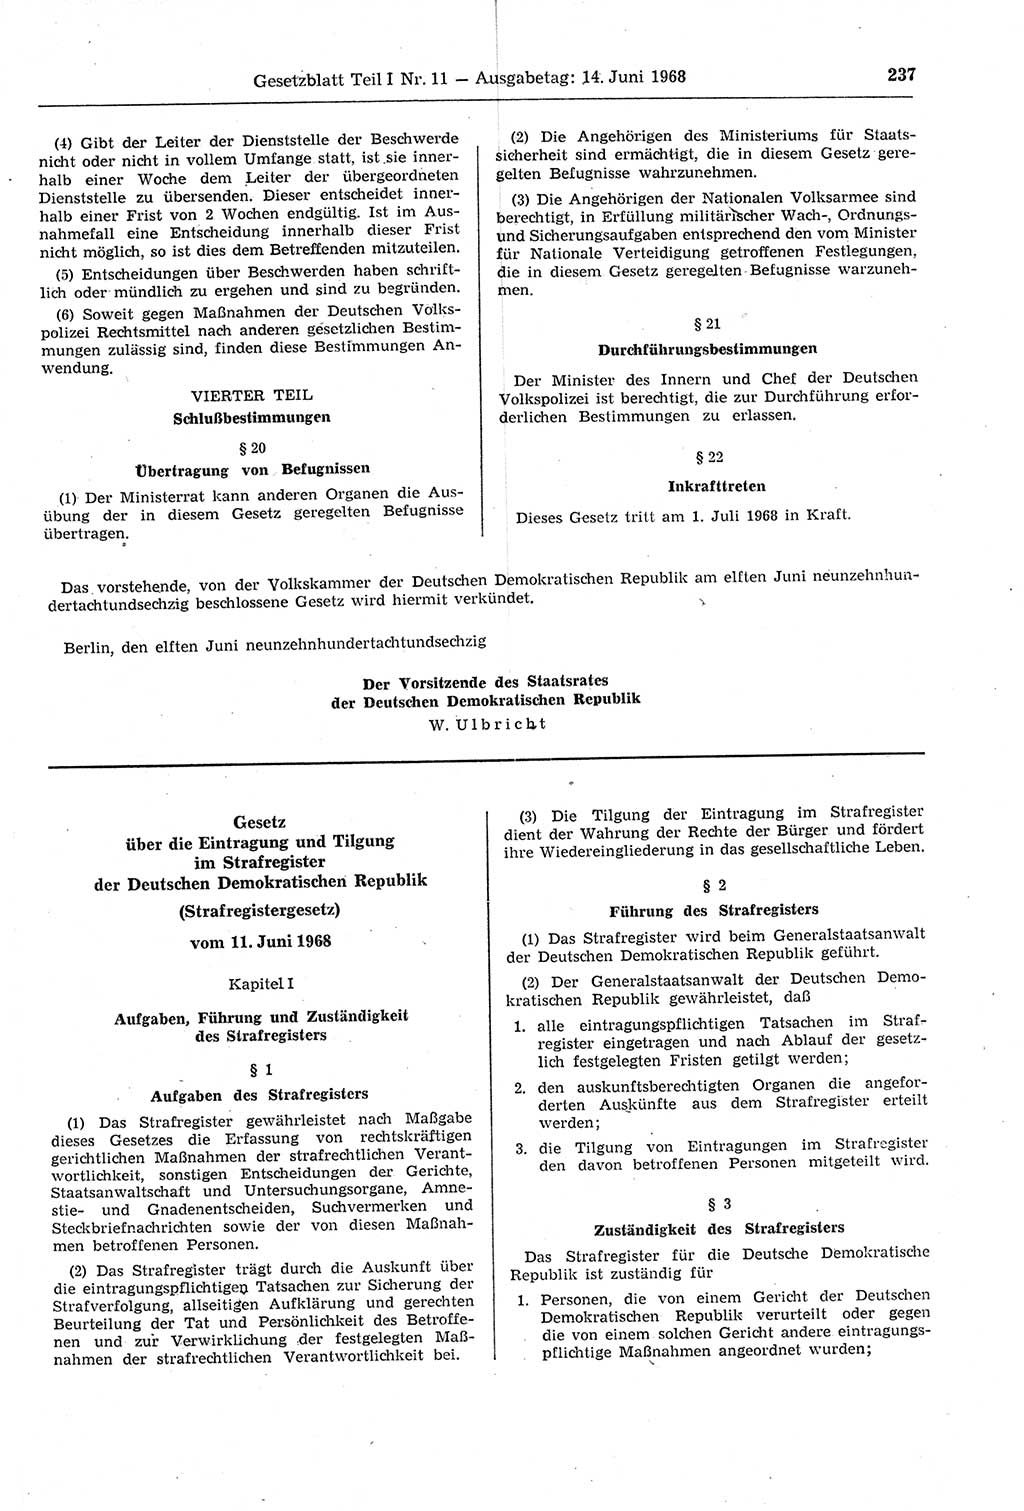 Gesetzblatt (GBl.) der Deutschen Demokratischen Republik (DDR) Teil Ⅰ 1968, Seite 237 (GBl. DDR Ⅰ 1968, S. 237)